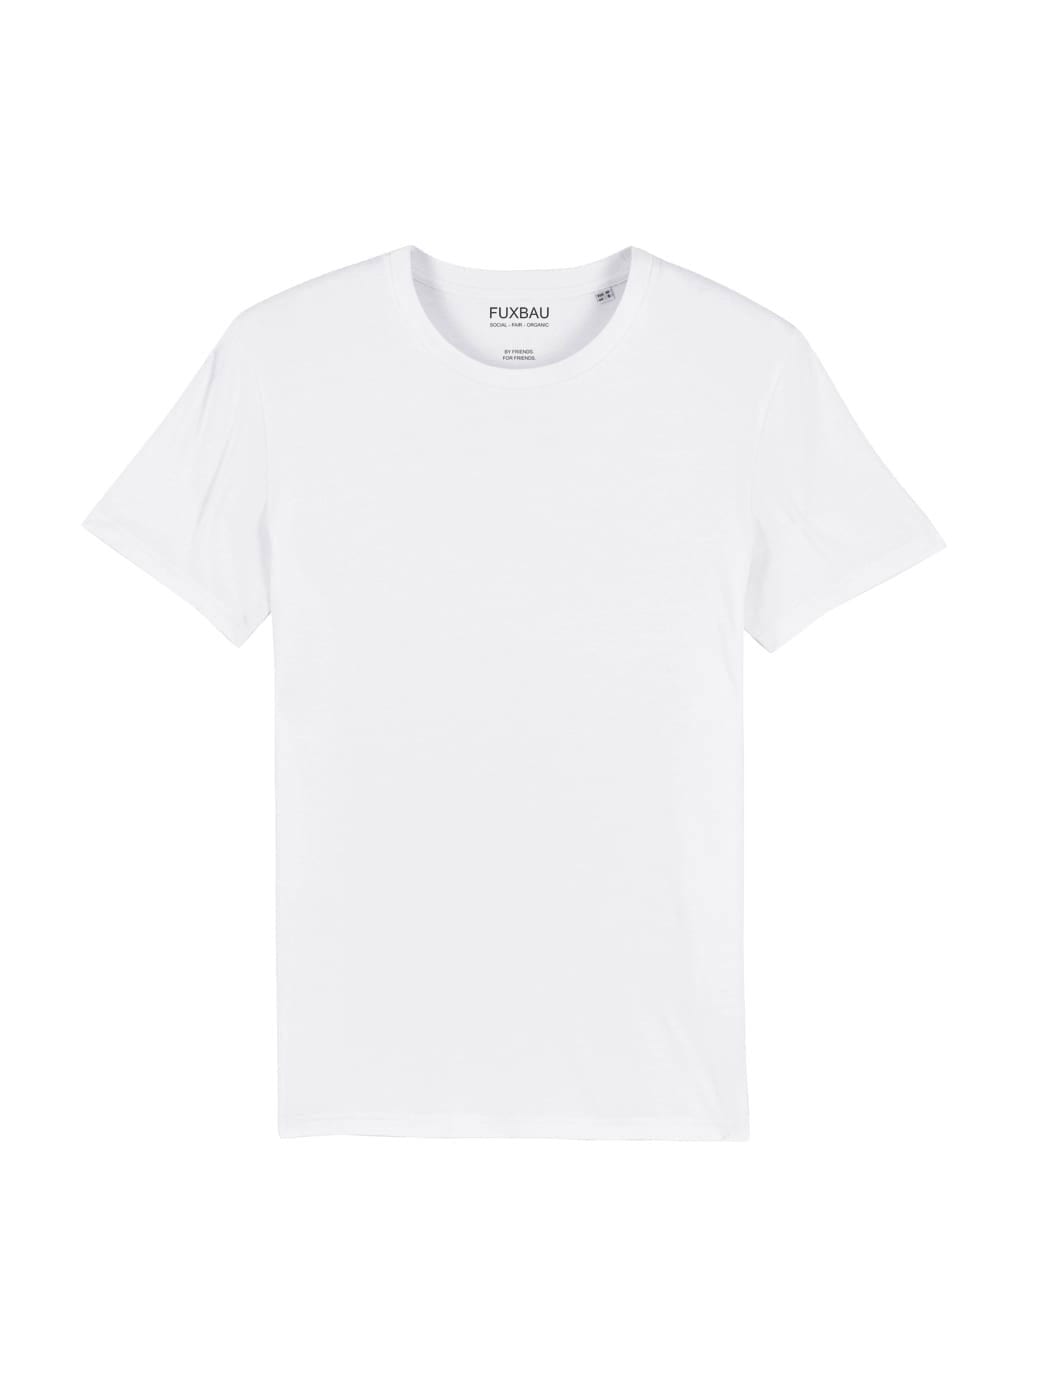 Nachhaltiges Fair Fashion Unisex Standard Basic T-Shirt in weiß von FUXBAU aus 100% GOTS zertifizierter Biobaumwolle.